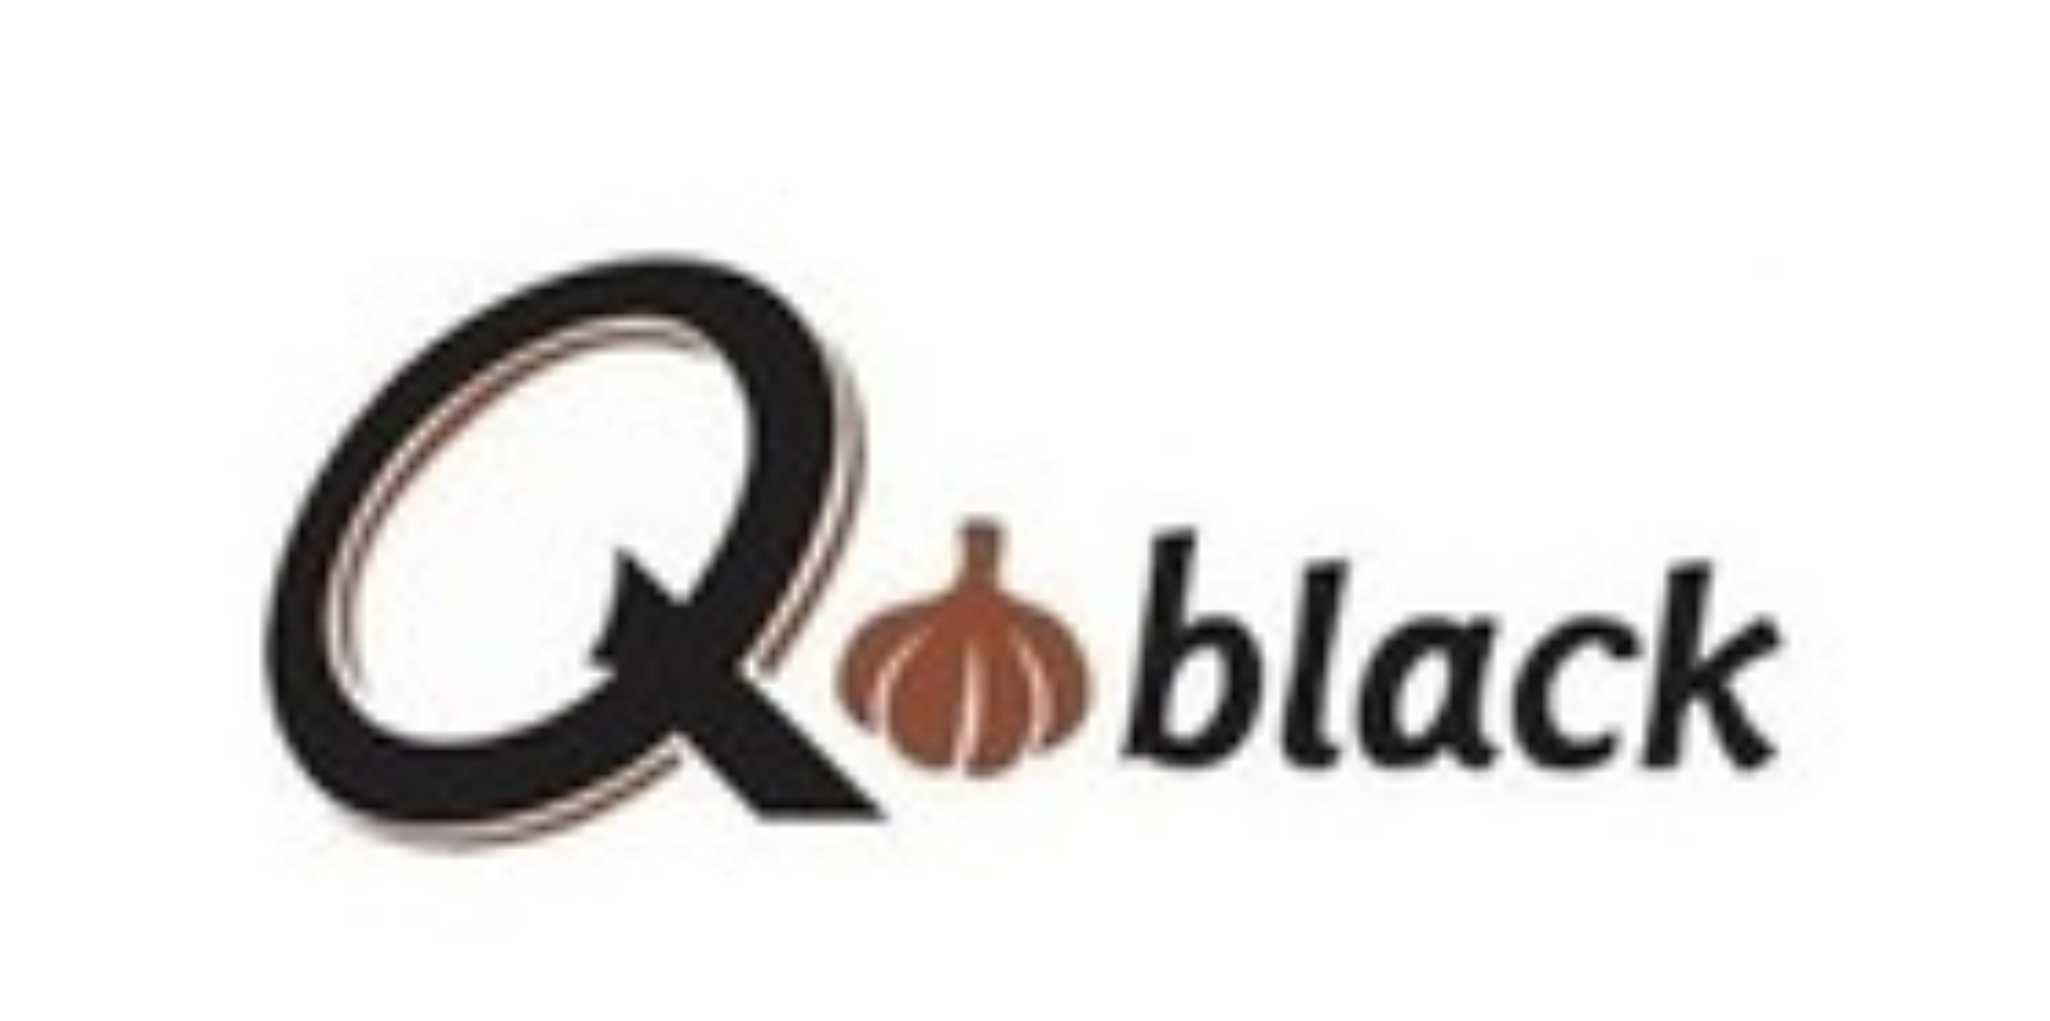 q black